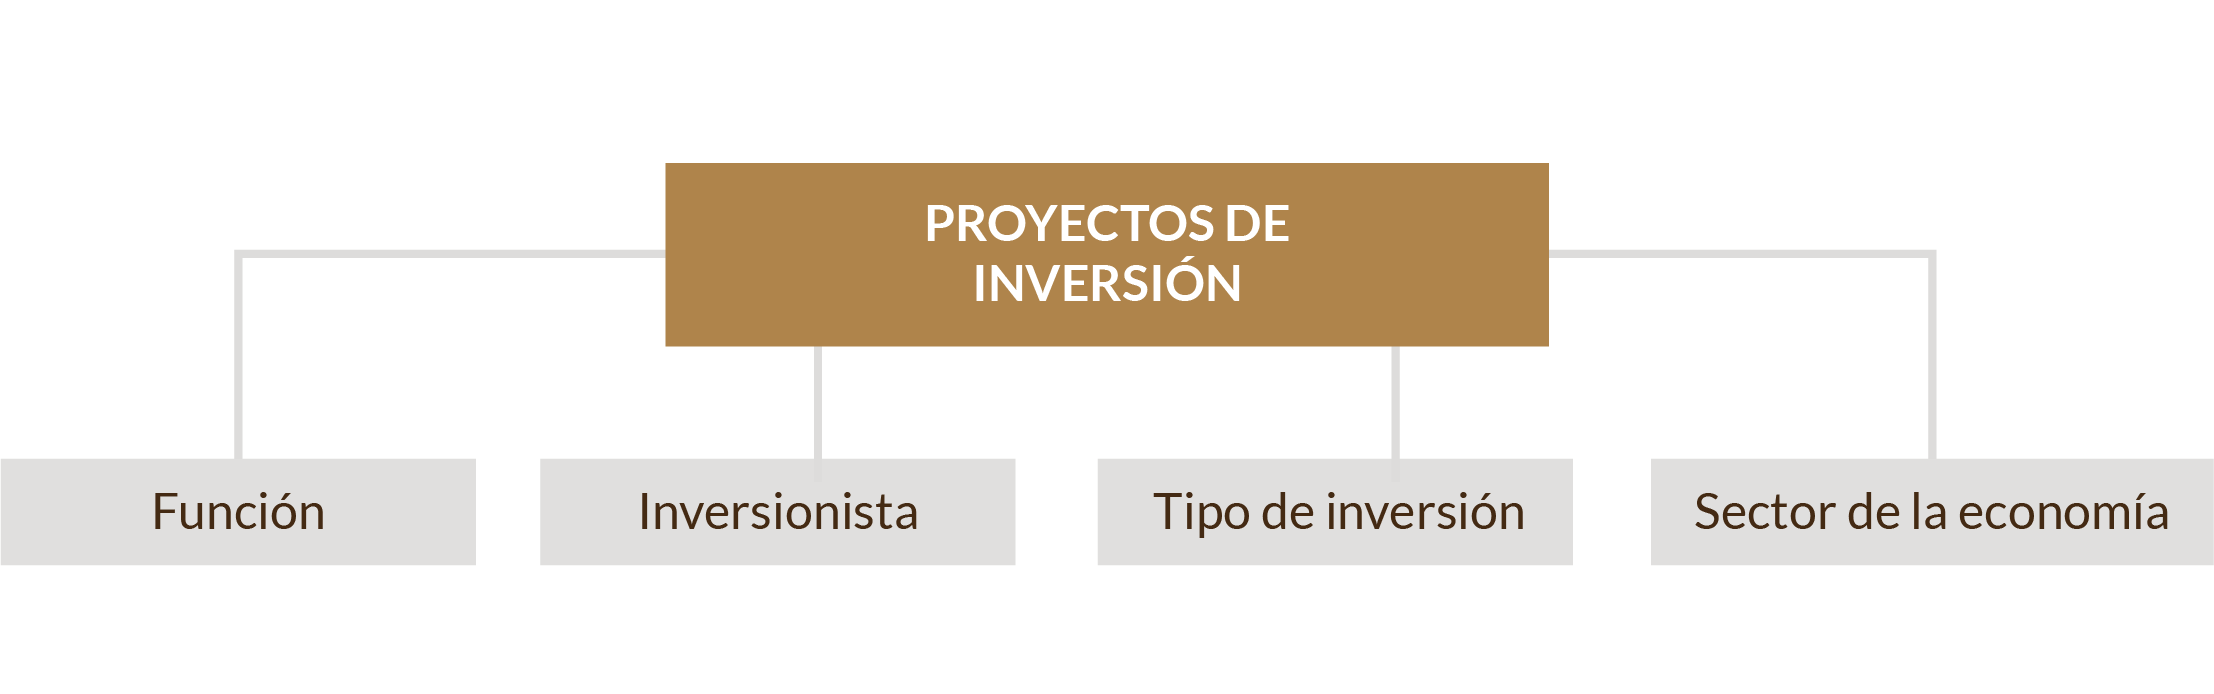 Esquema de clasificación en cuatro rubros de los proyectos de inversión